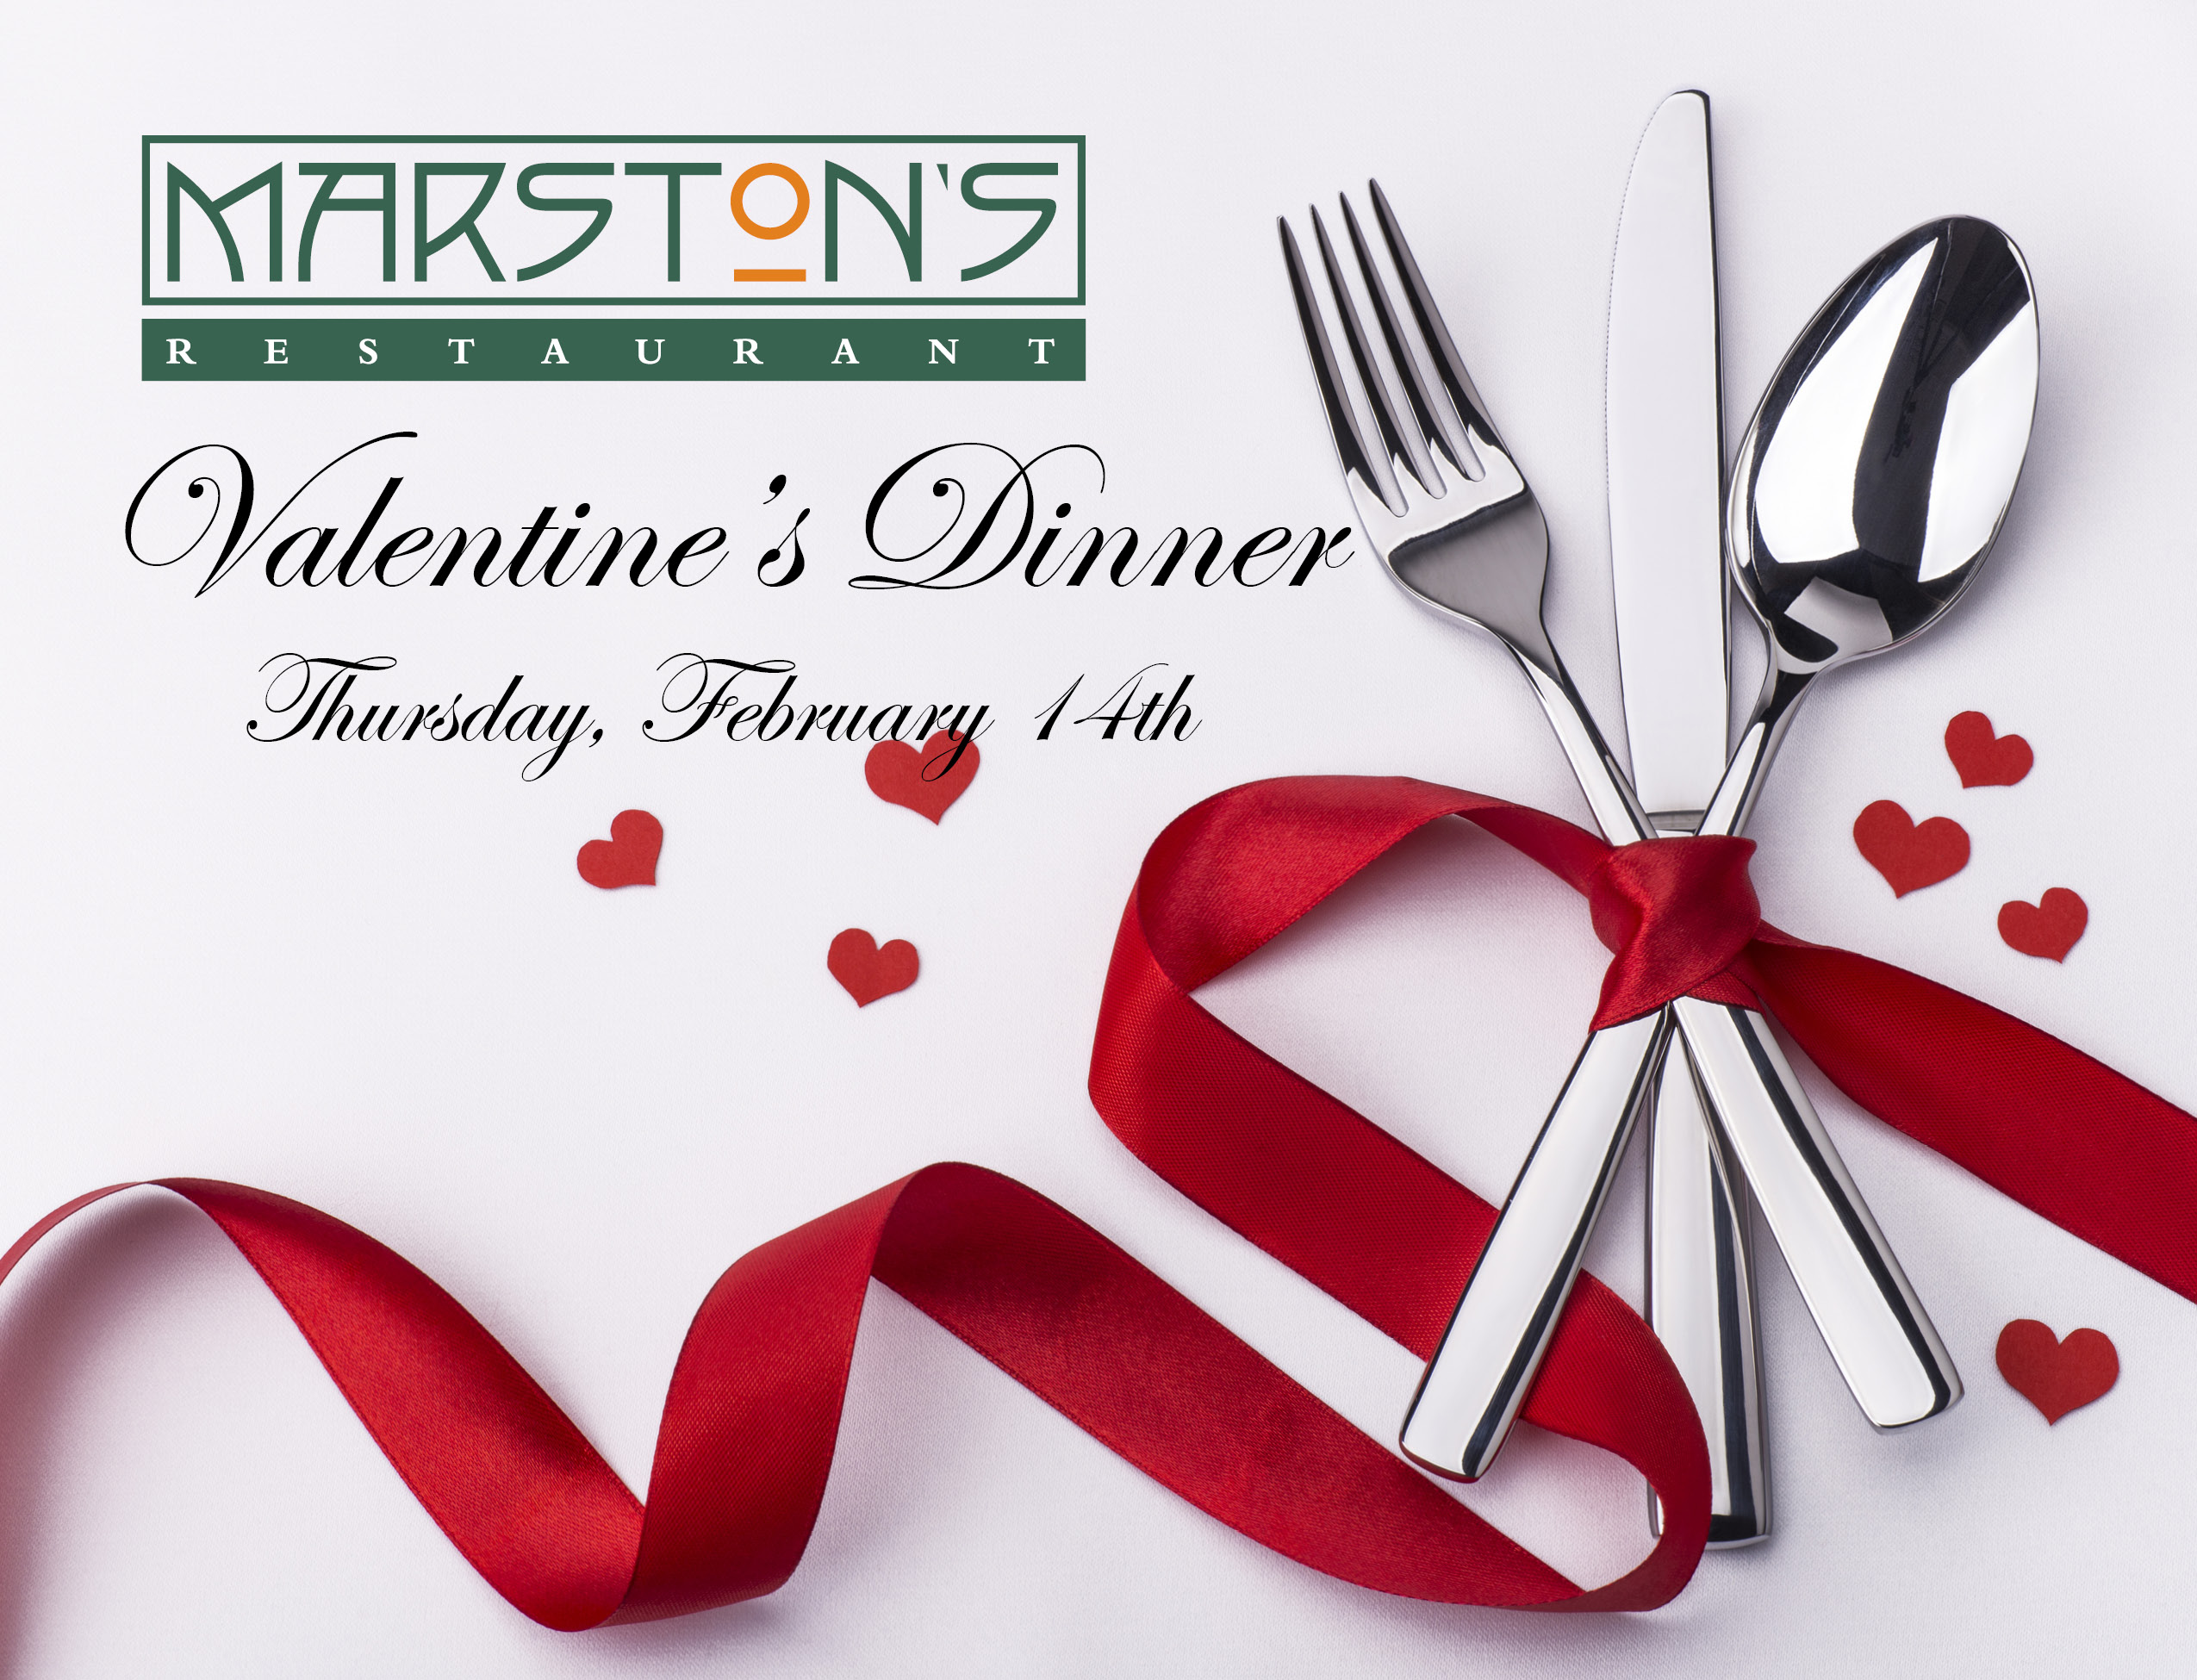 Valentine's Dinner Thursday, February 14th